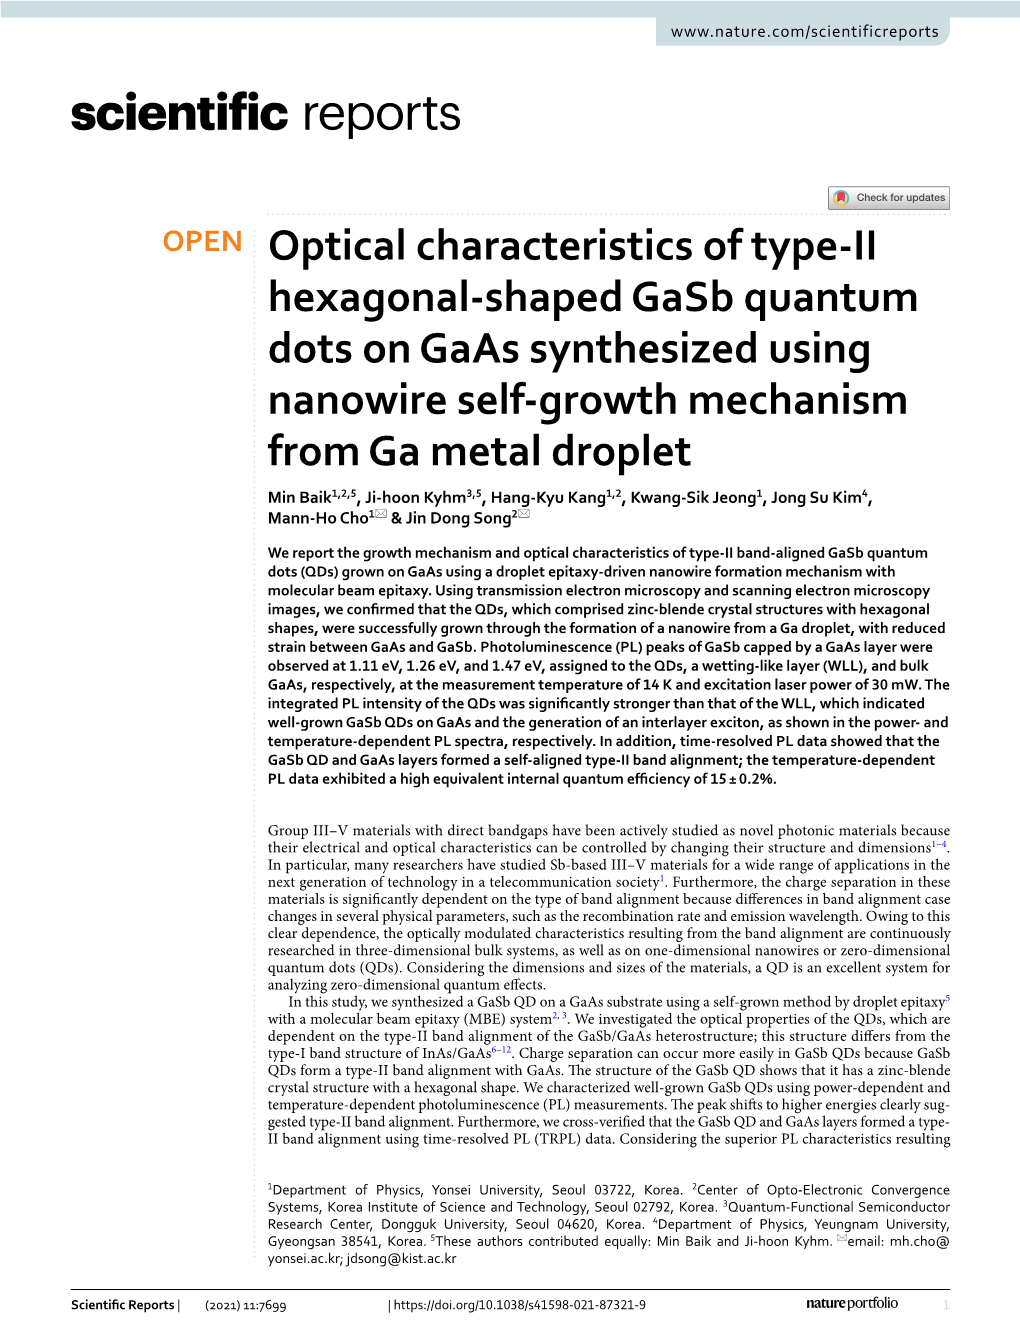 Optical Characteristics of Type-II Hexagonal-Shaped Gasb Quantum